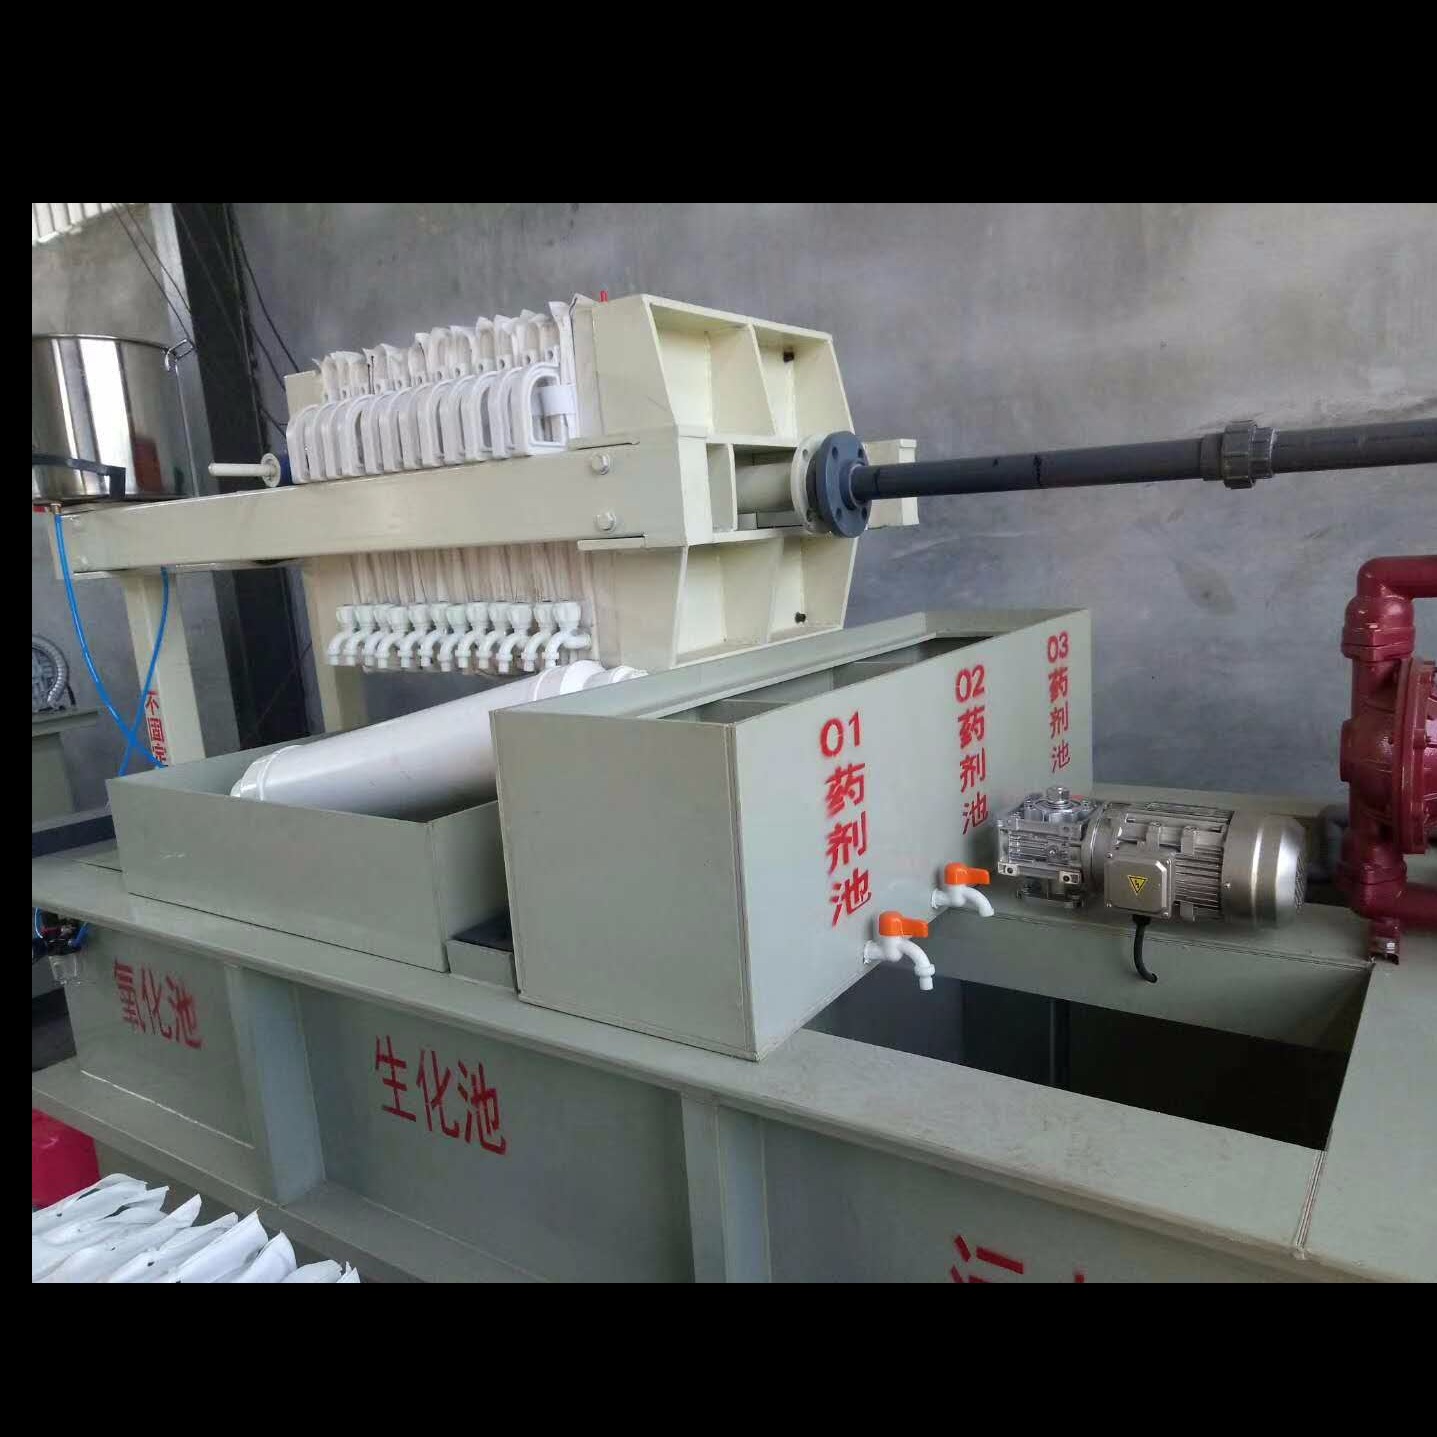 污水处理成套设备 污水处理设备A重庆污水处理设备A污水处理设备厂家1